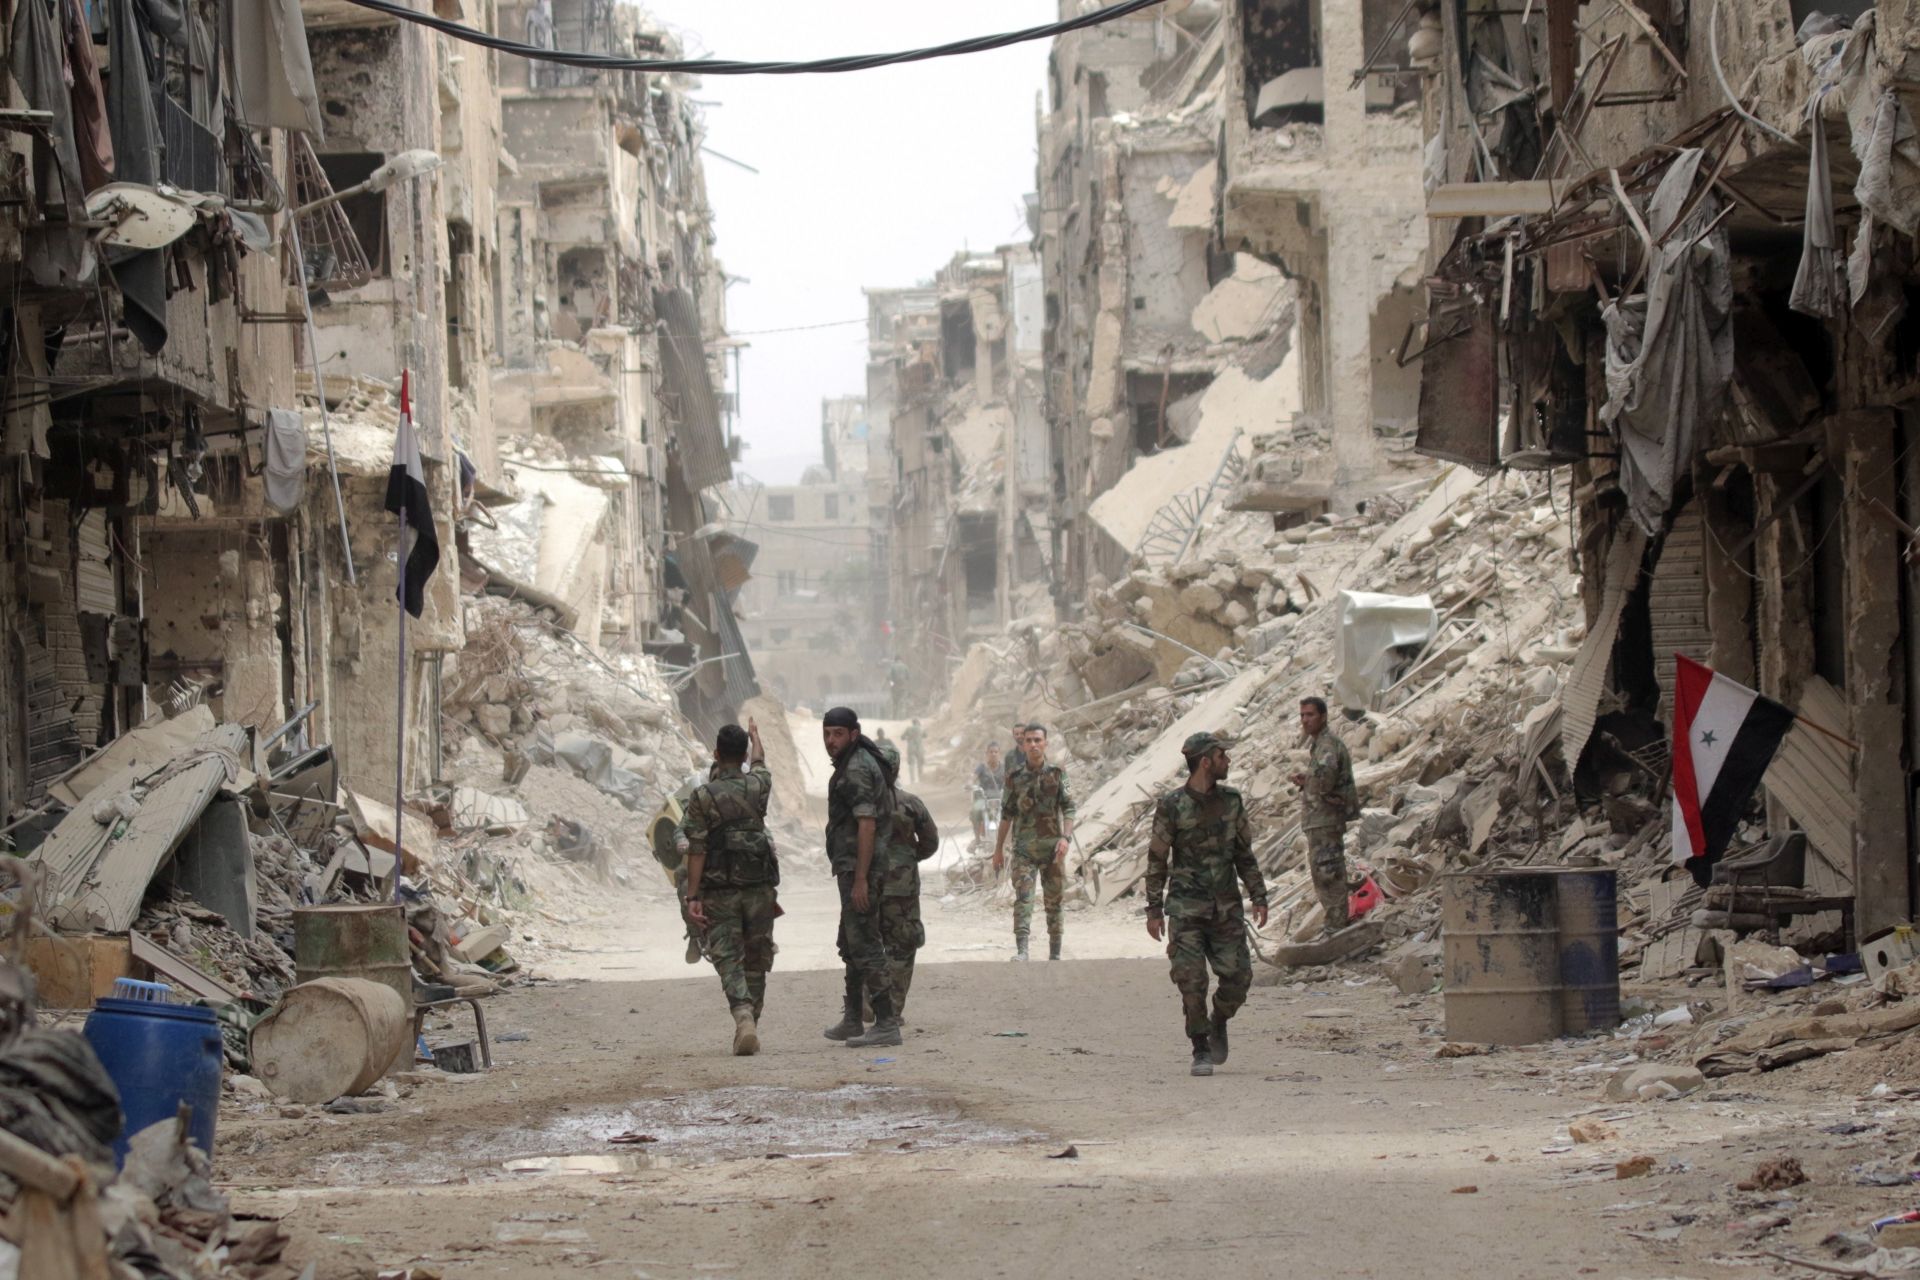 Harmadik napja folynak a rengeteg halottal járó harcok Északkelet-Szíriában 